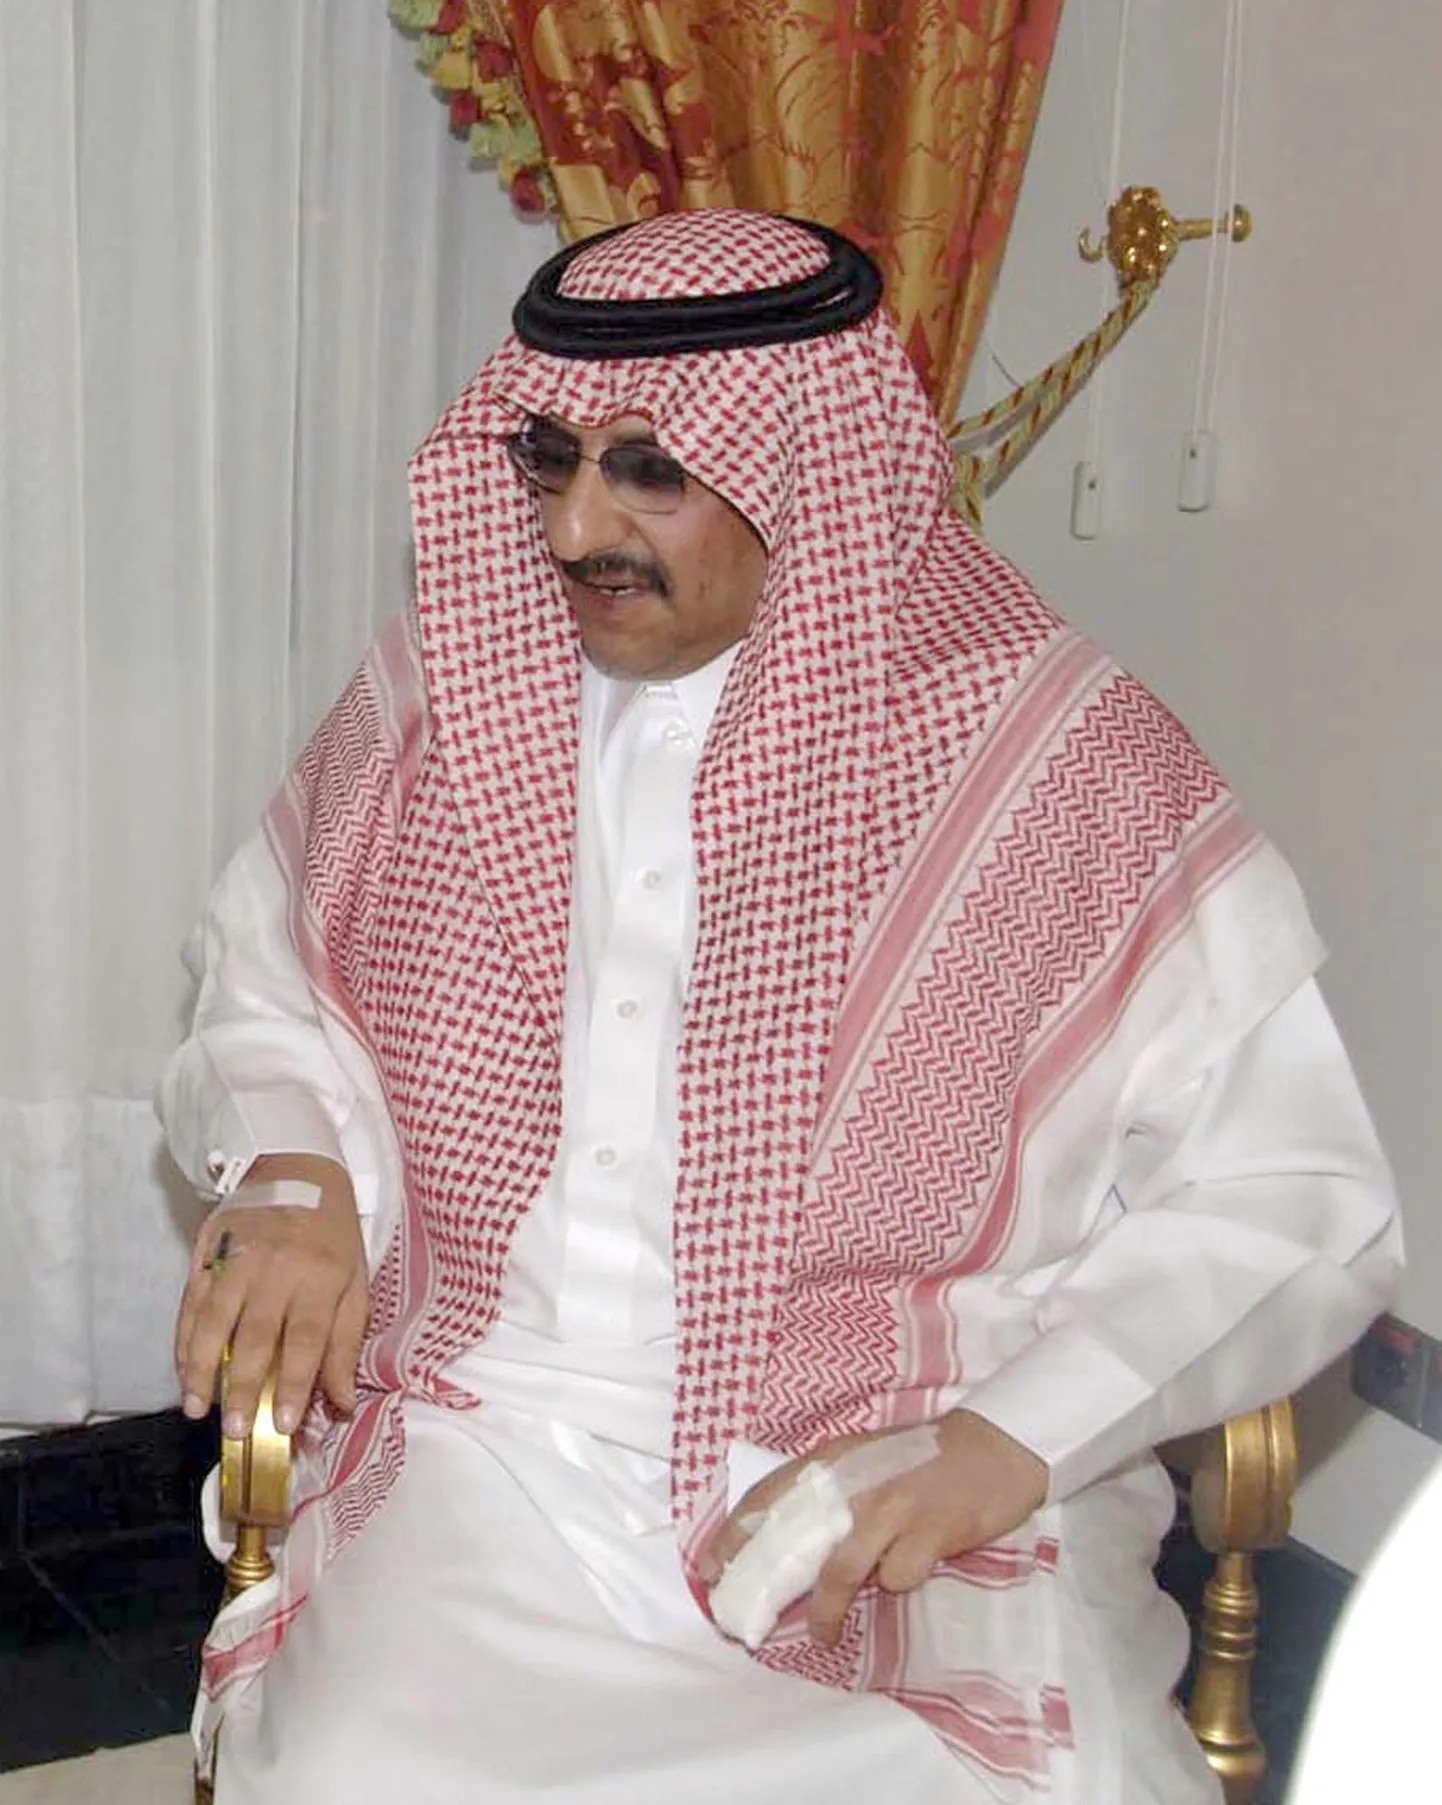 Saudi Araabia prints Mohammed bin Nayef